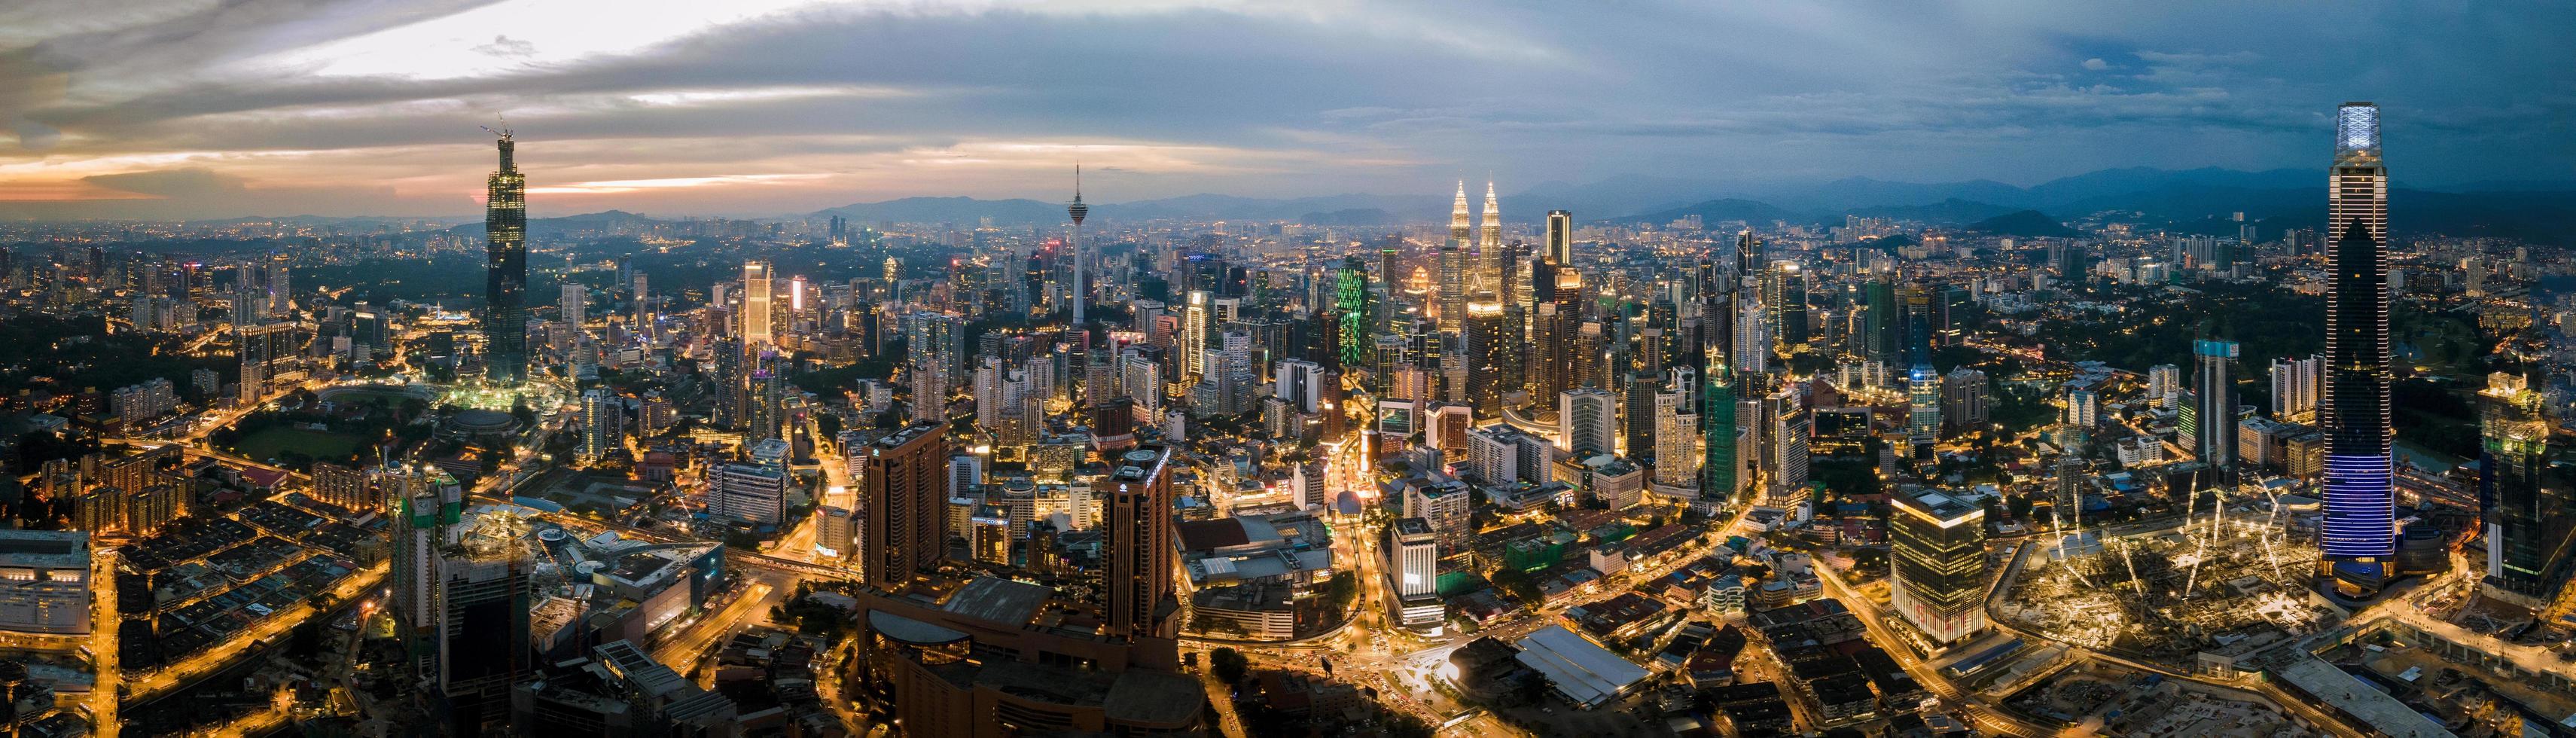 panorama över staden Kuala Lumpur foto